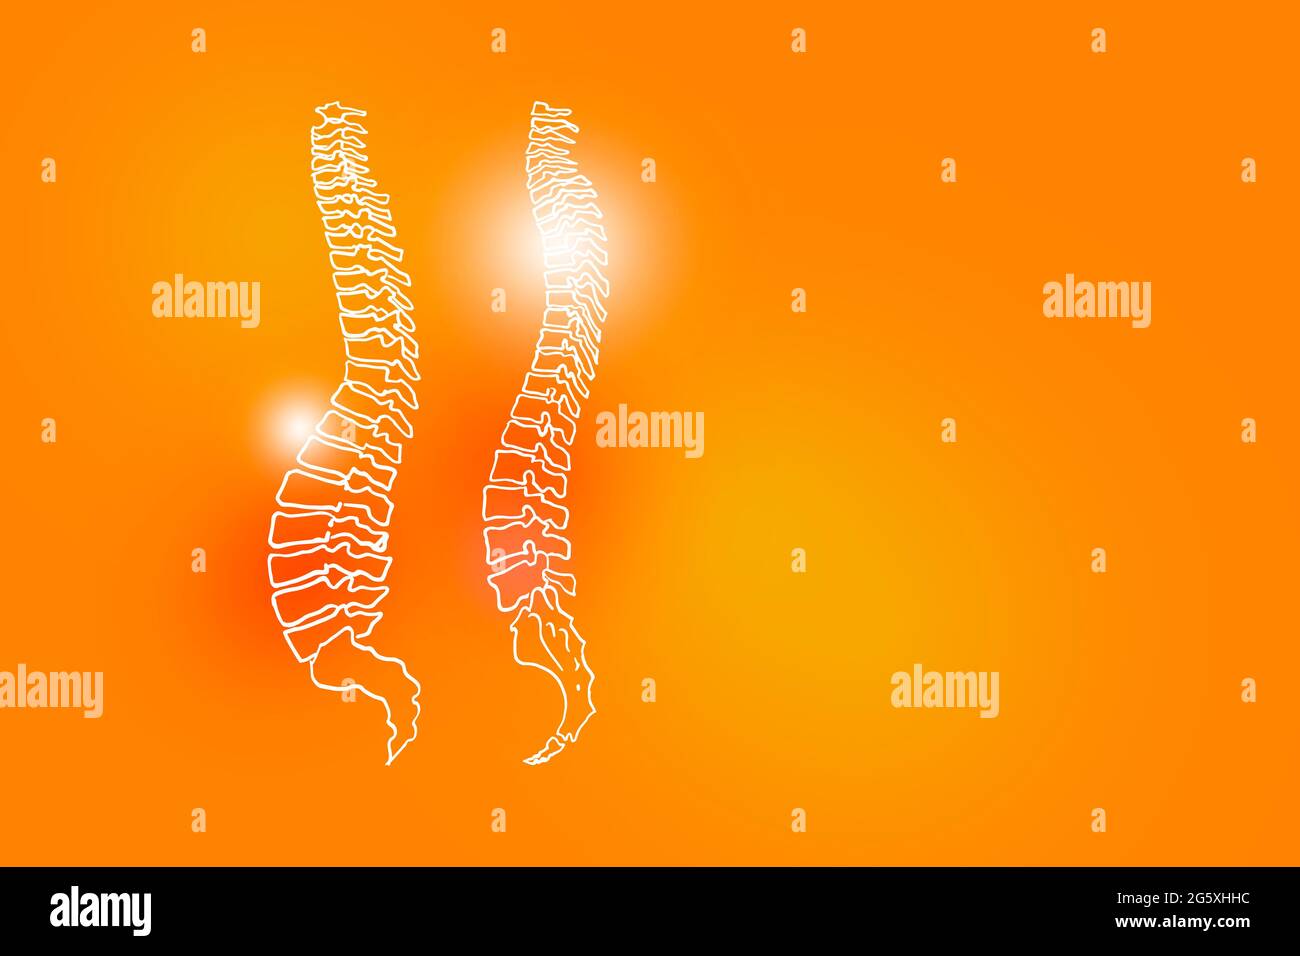 Illustrazione Handrawn della colonna umana su sfondo arancione positivo. Set medico-scientifico con i principali organi umani con spazio di copia vuoto per testo o informazioni Foto Stock